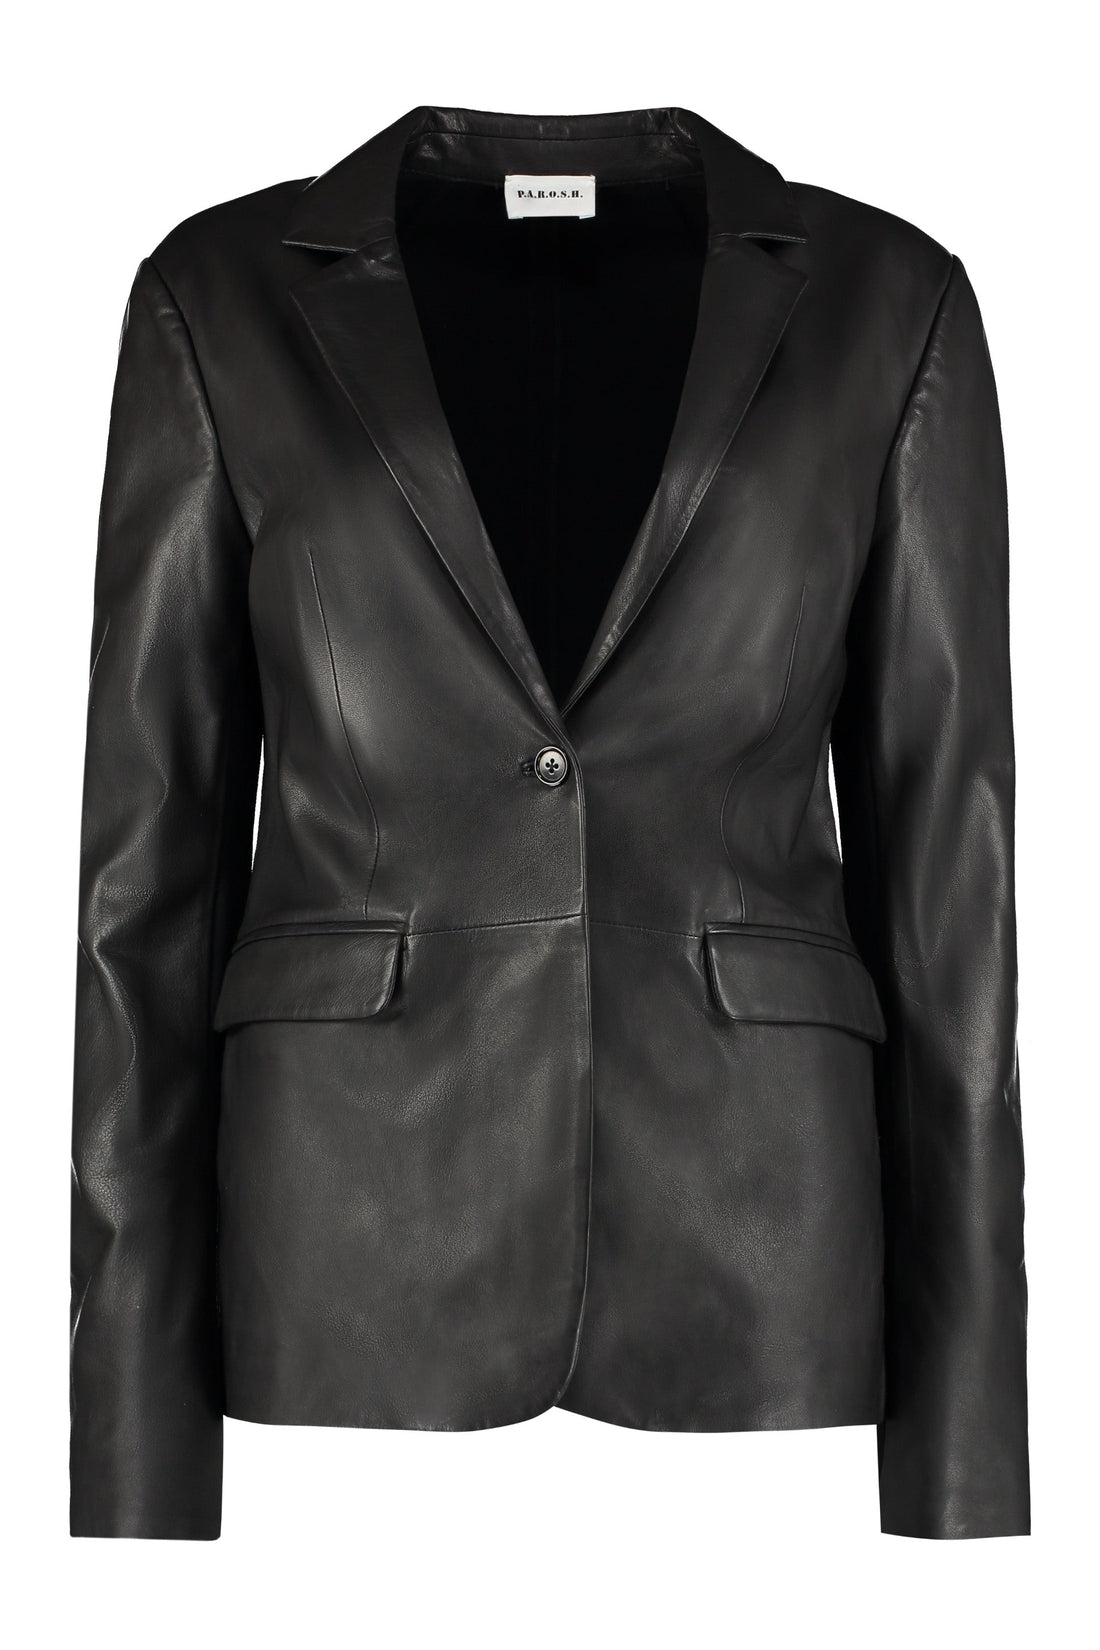 Parosh-OUTLET-SALE-Maciockx leather jacket-ARCHIVIST